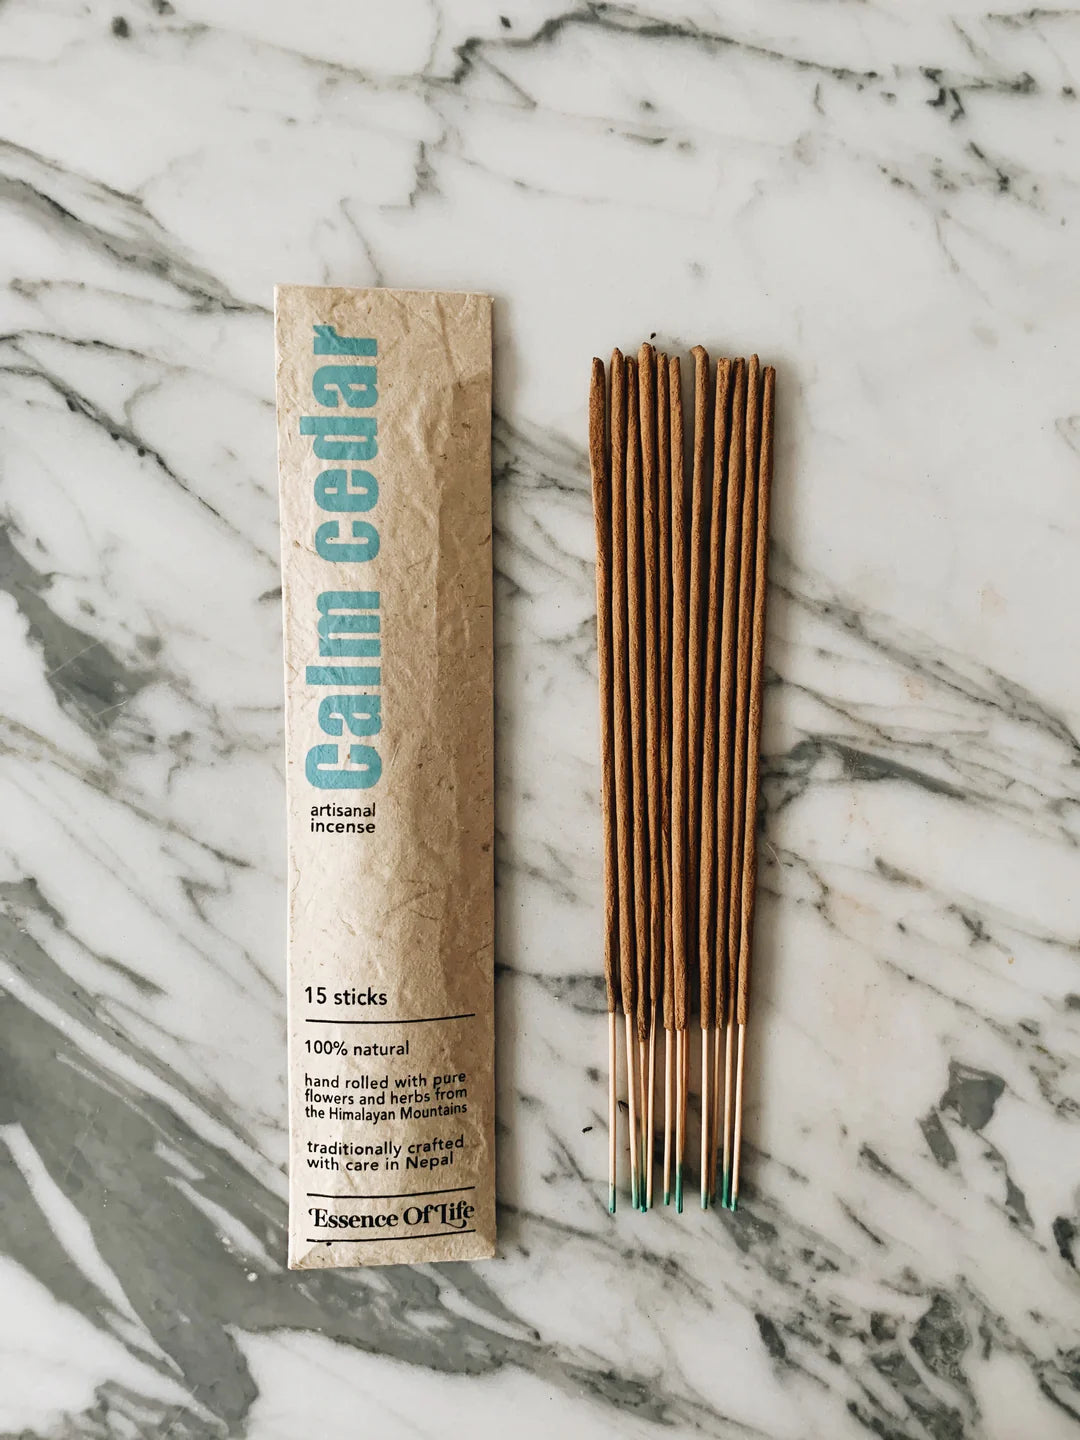 Essence of Life - calm cedar artisanal incense